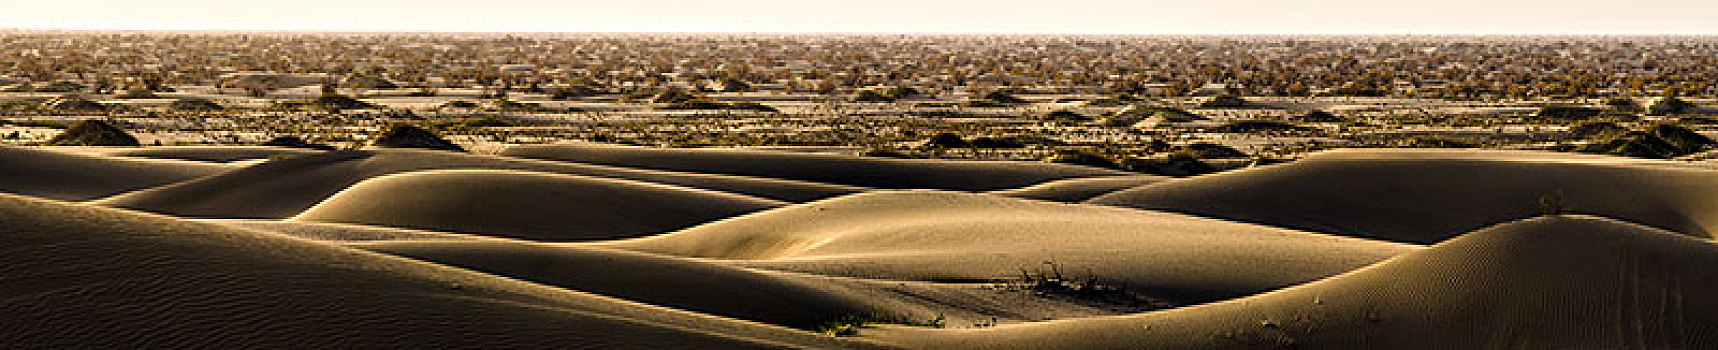 塔克拉玛干沙漠-1,全景图,麦盖提